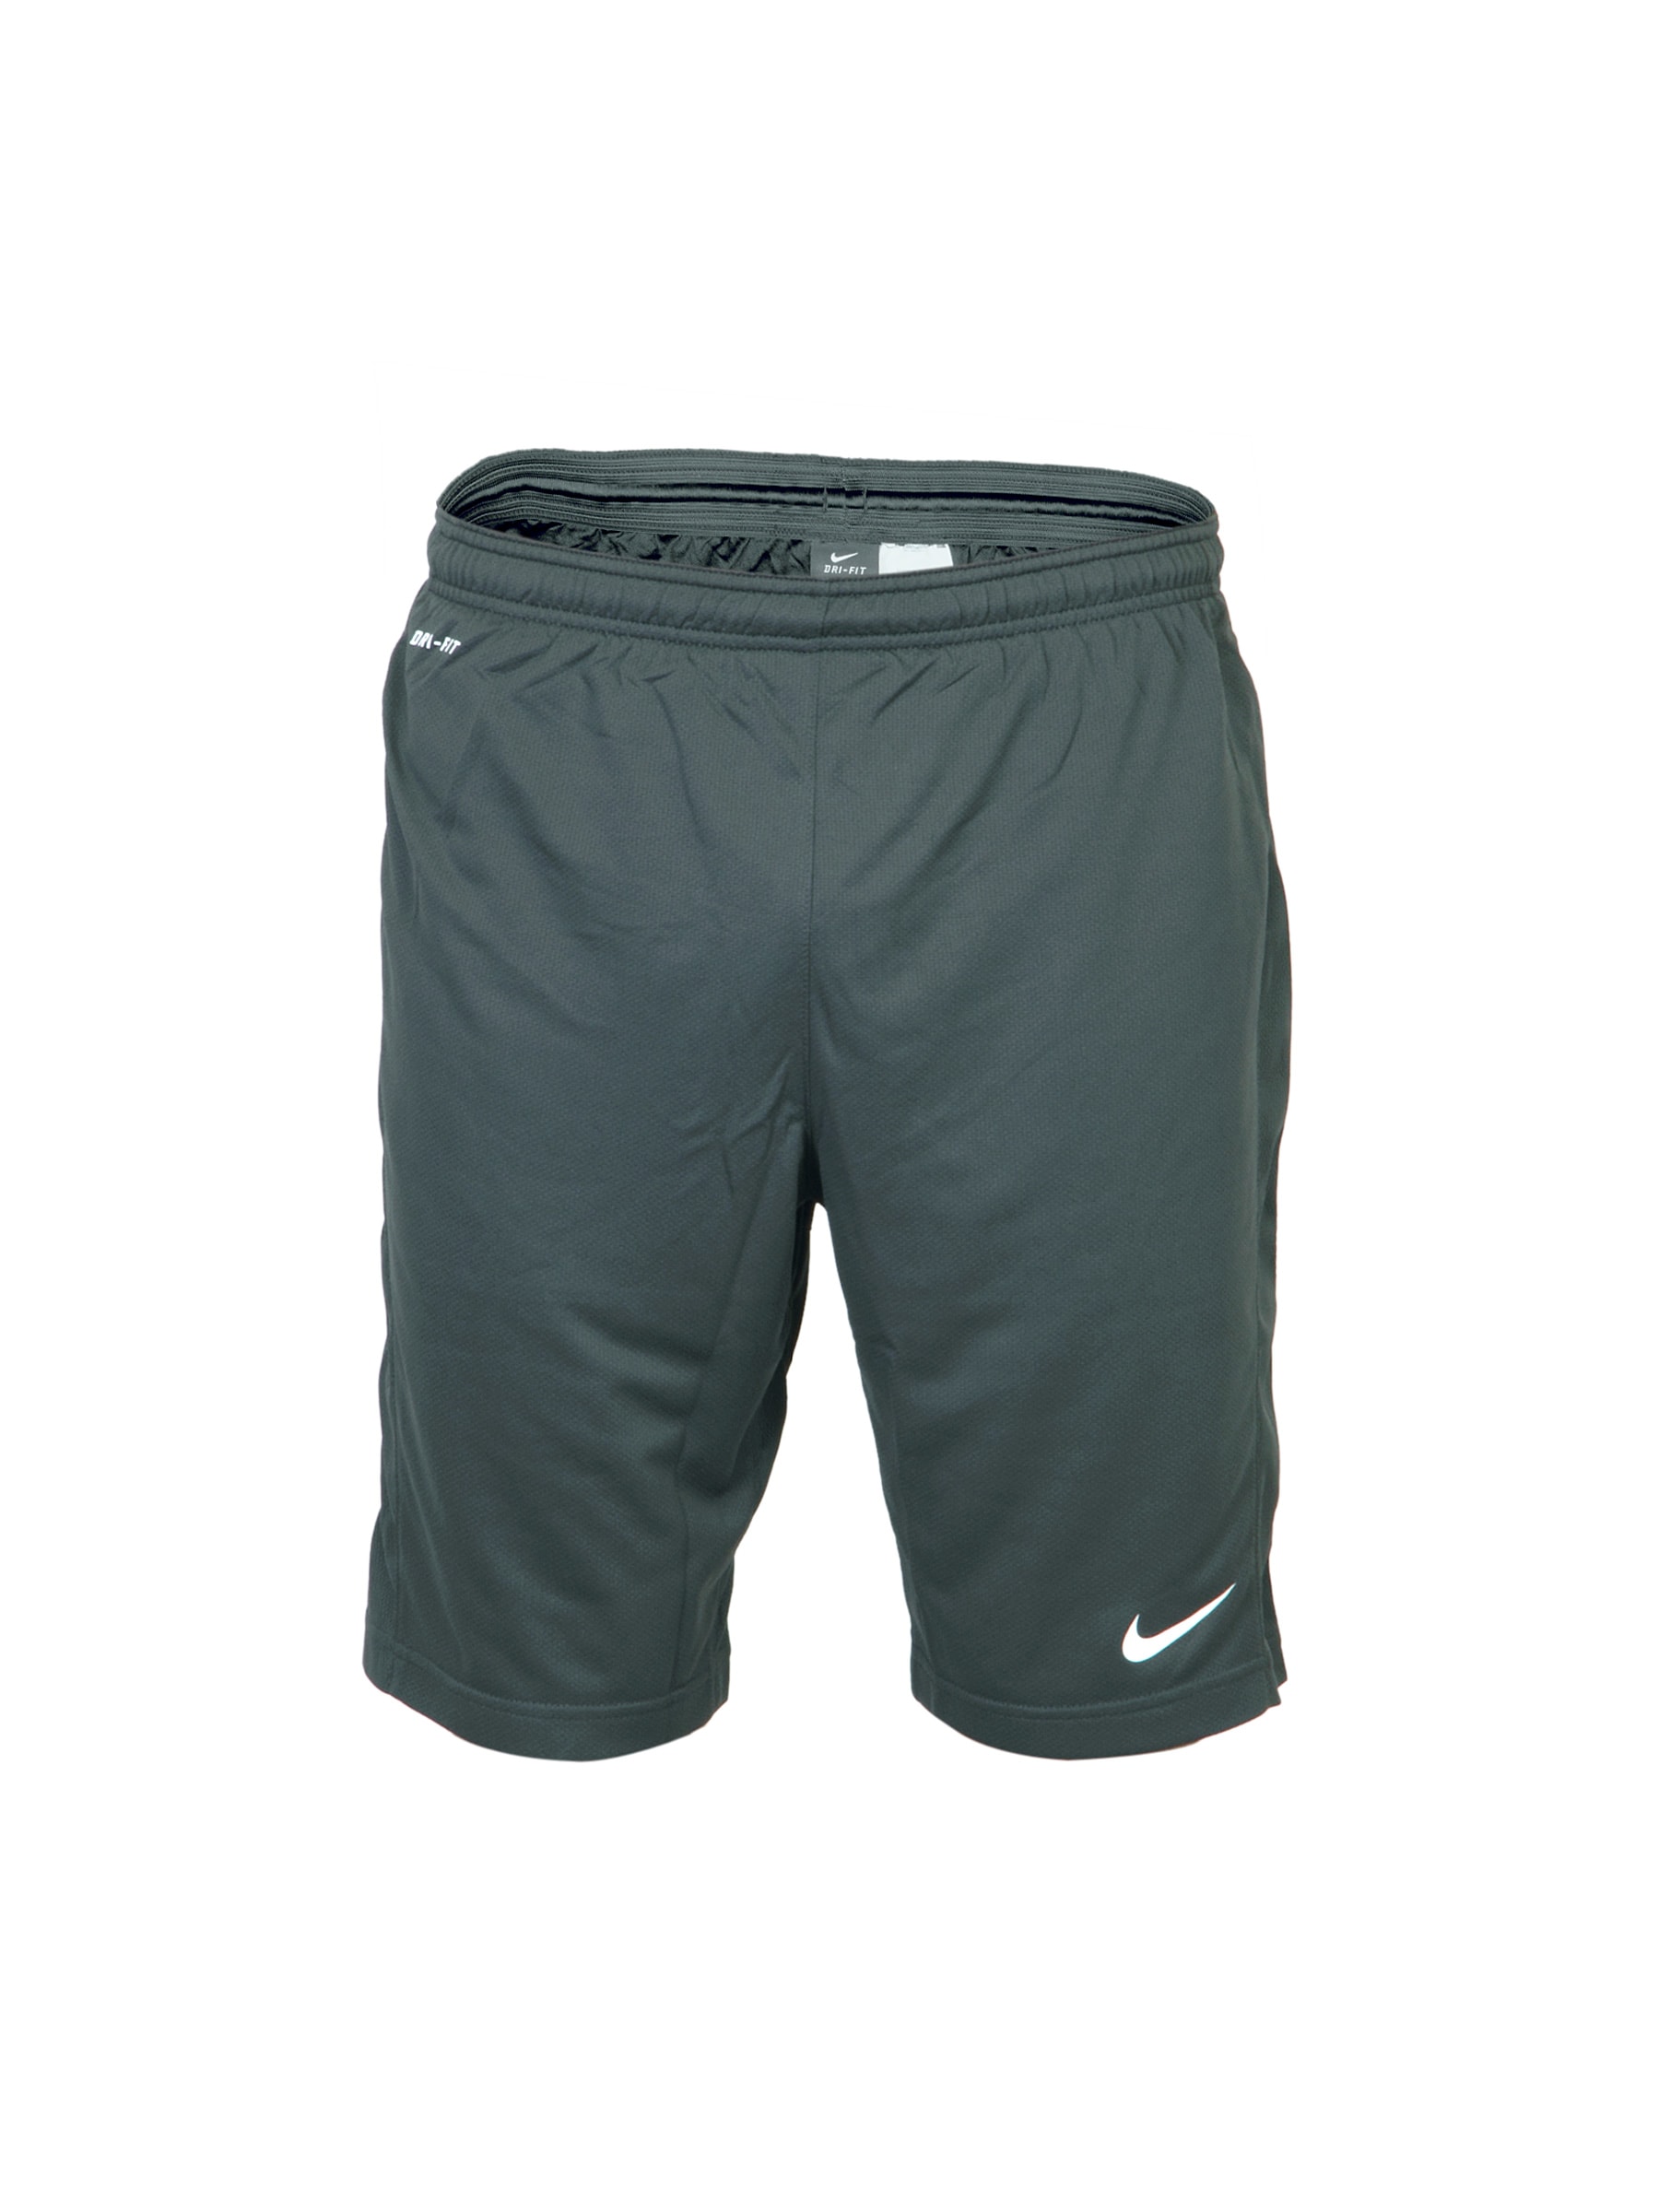 Nike Men Premier Knit Grey Shorts